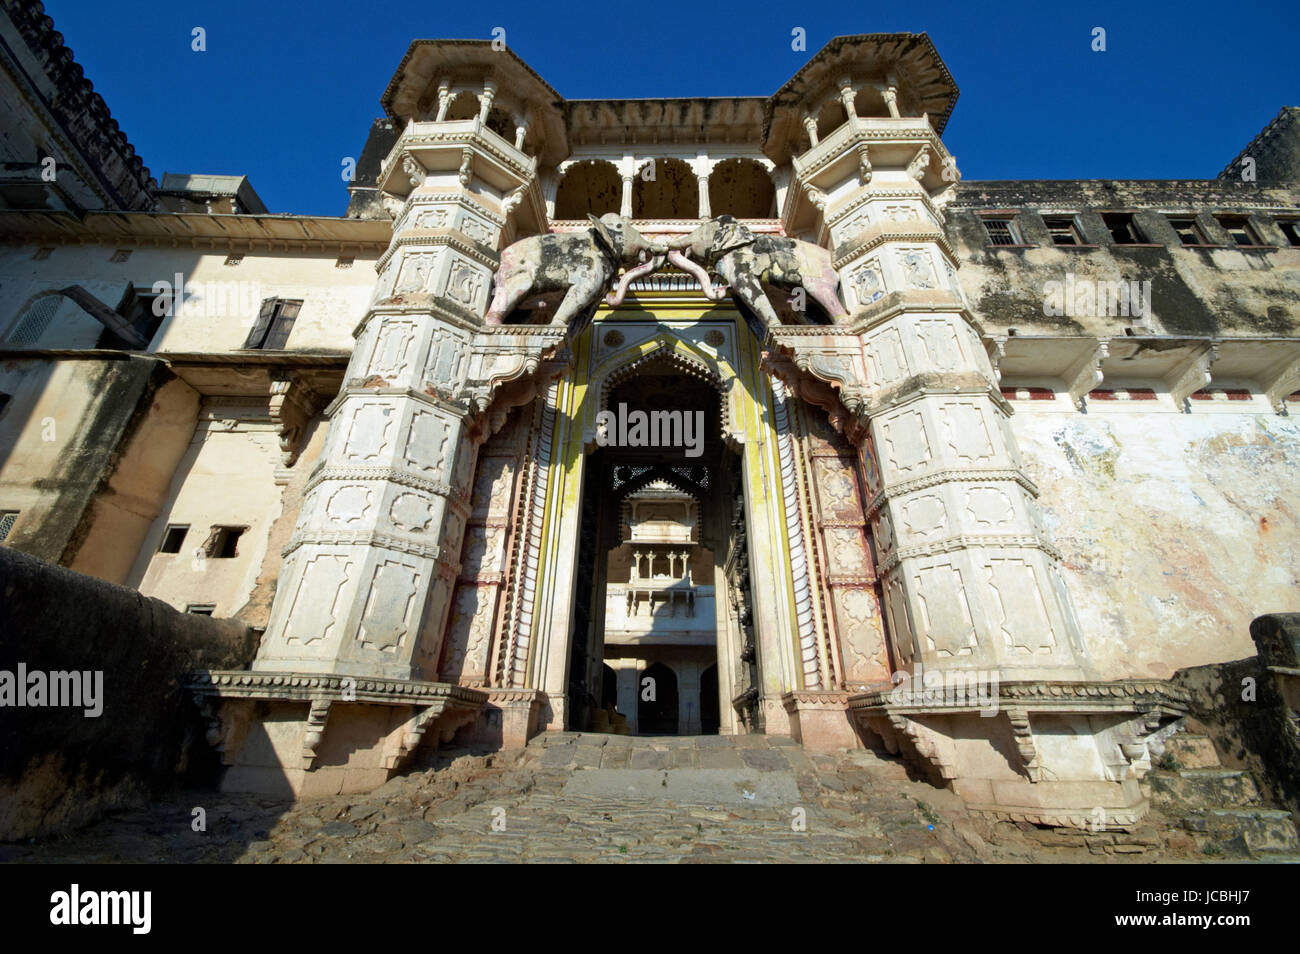 La porte de l'éléphant. Entrée fortifiée à l'émiettement Taragarh Palace à Bundi, Rajasthan, Inde. Banque D'Images